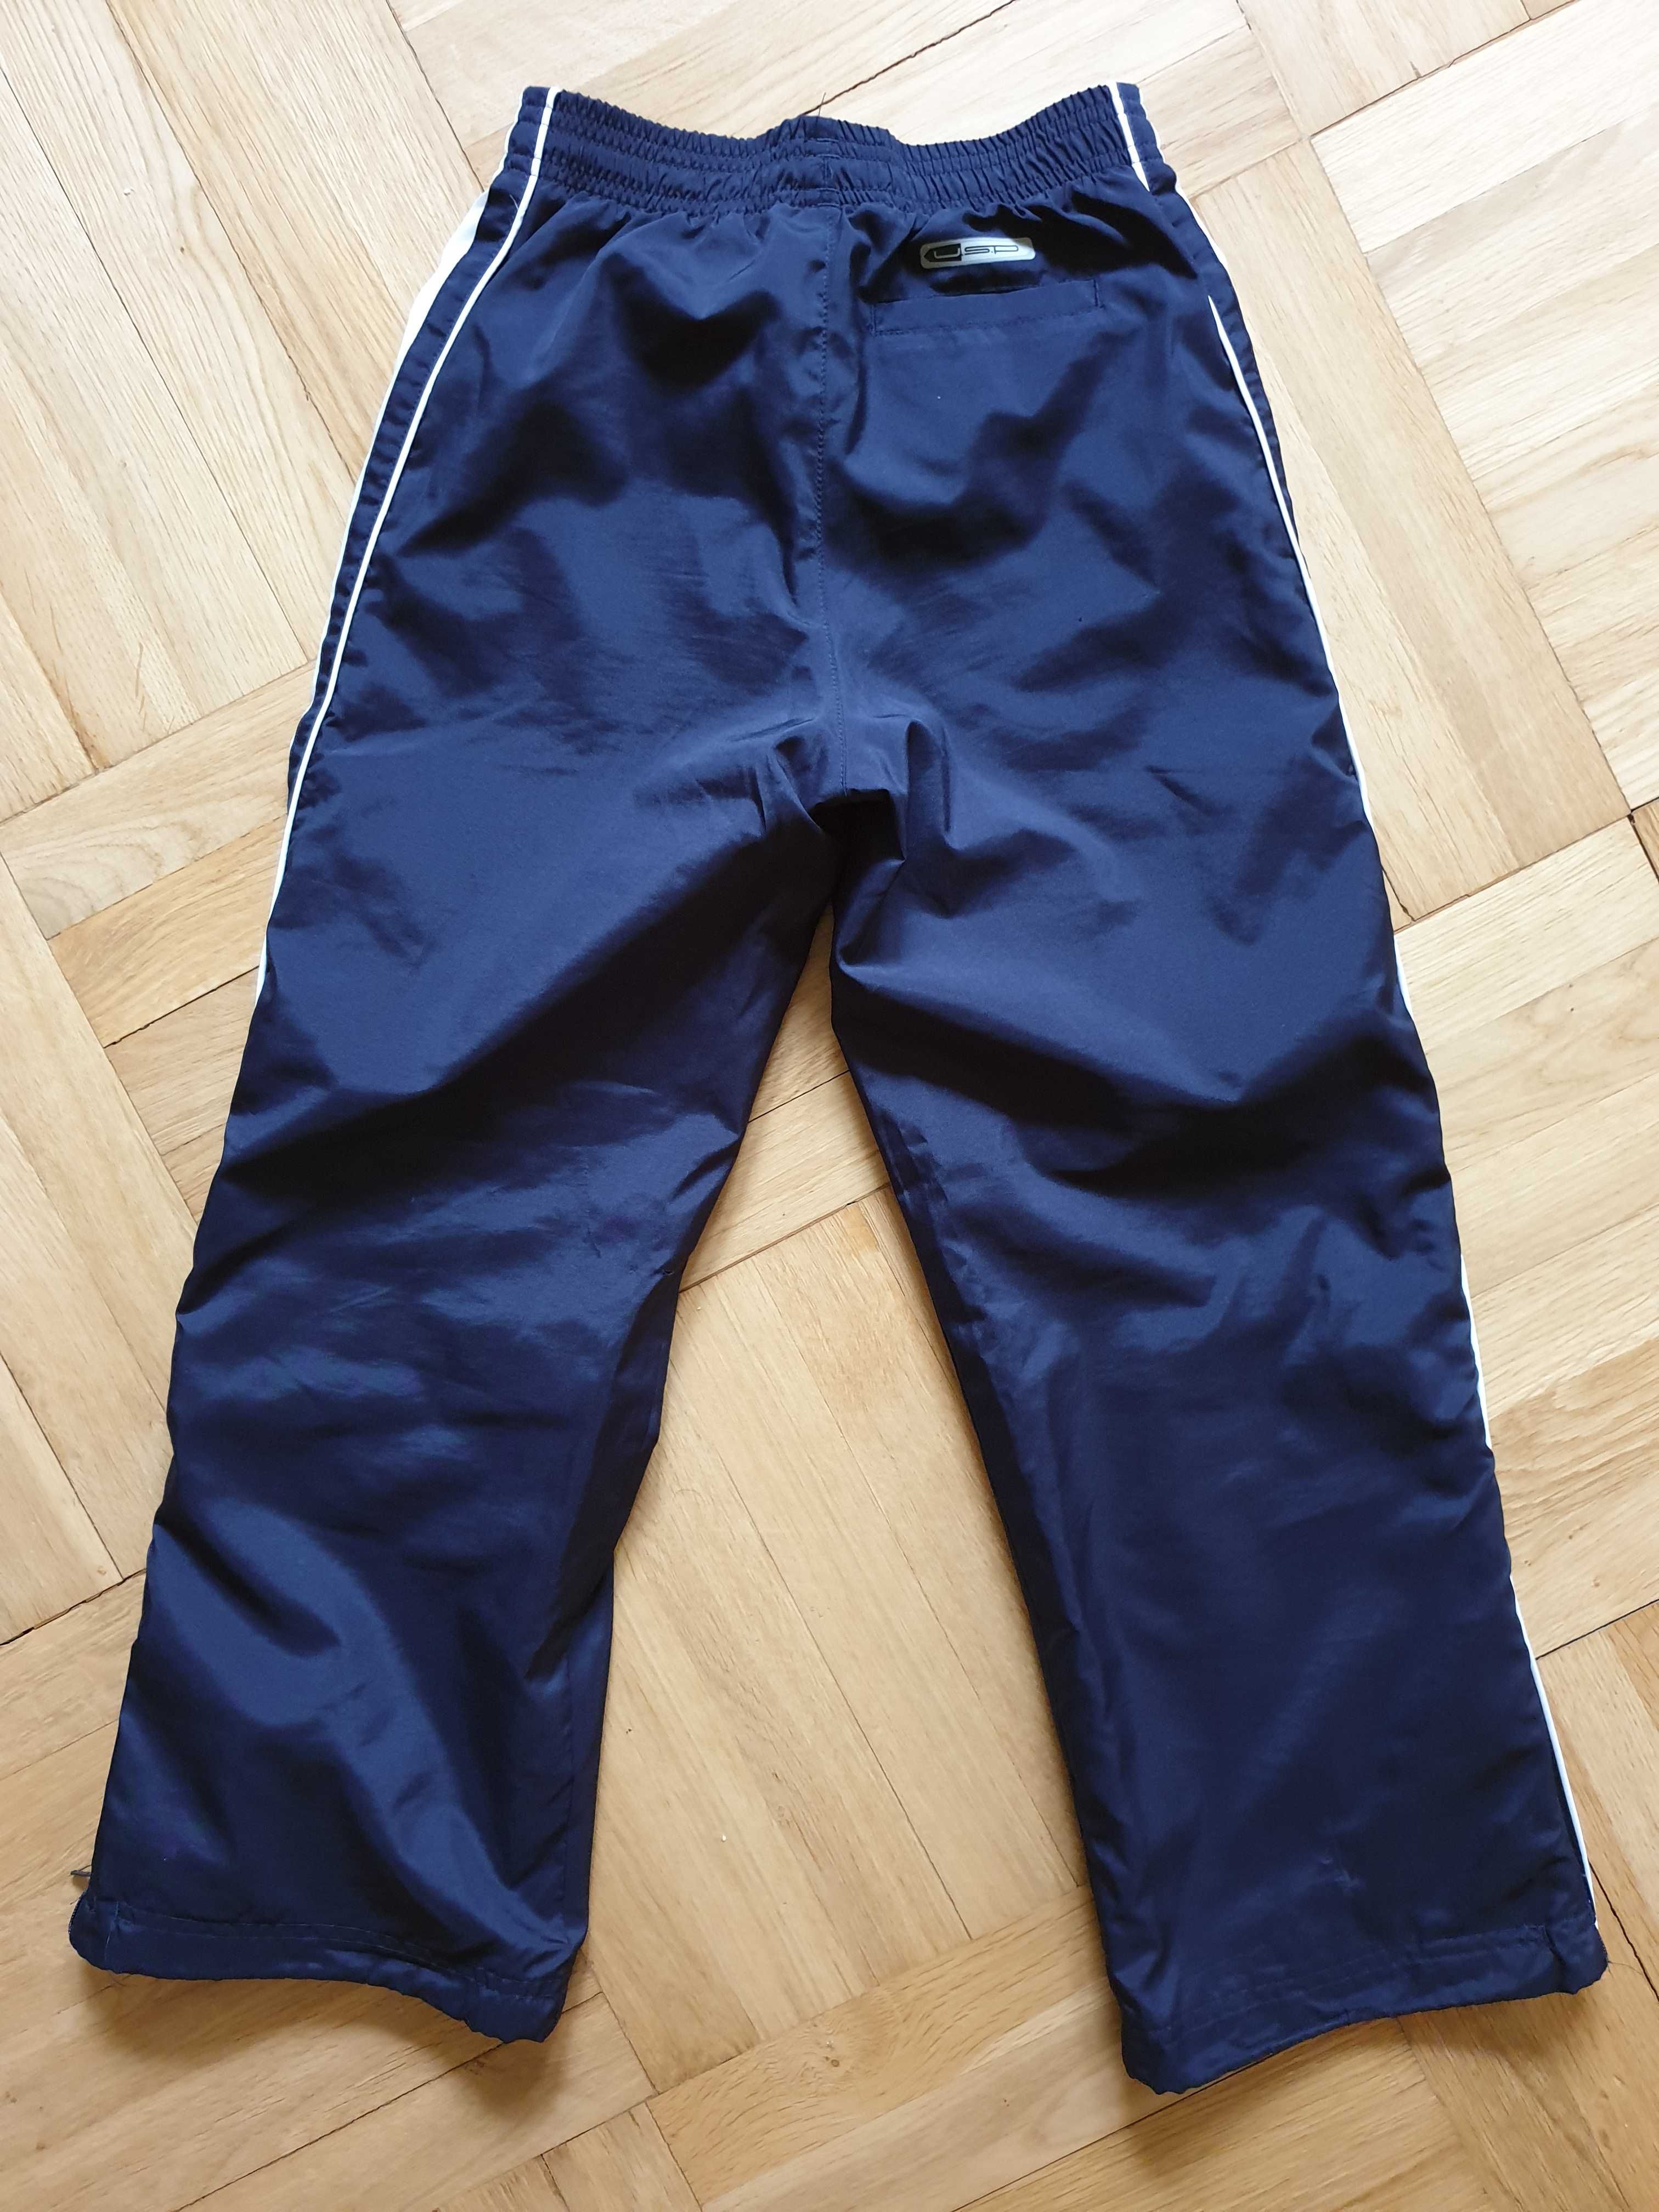 Spodnie dresowe PUMA , regulowane nogawki, rozmiar 128 cm